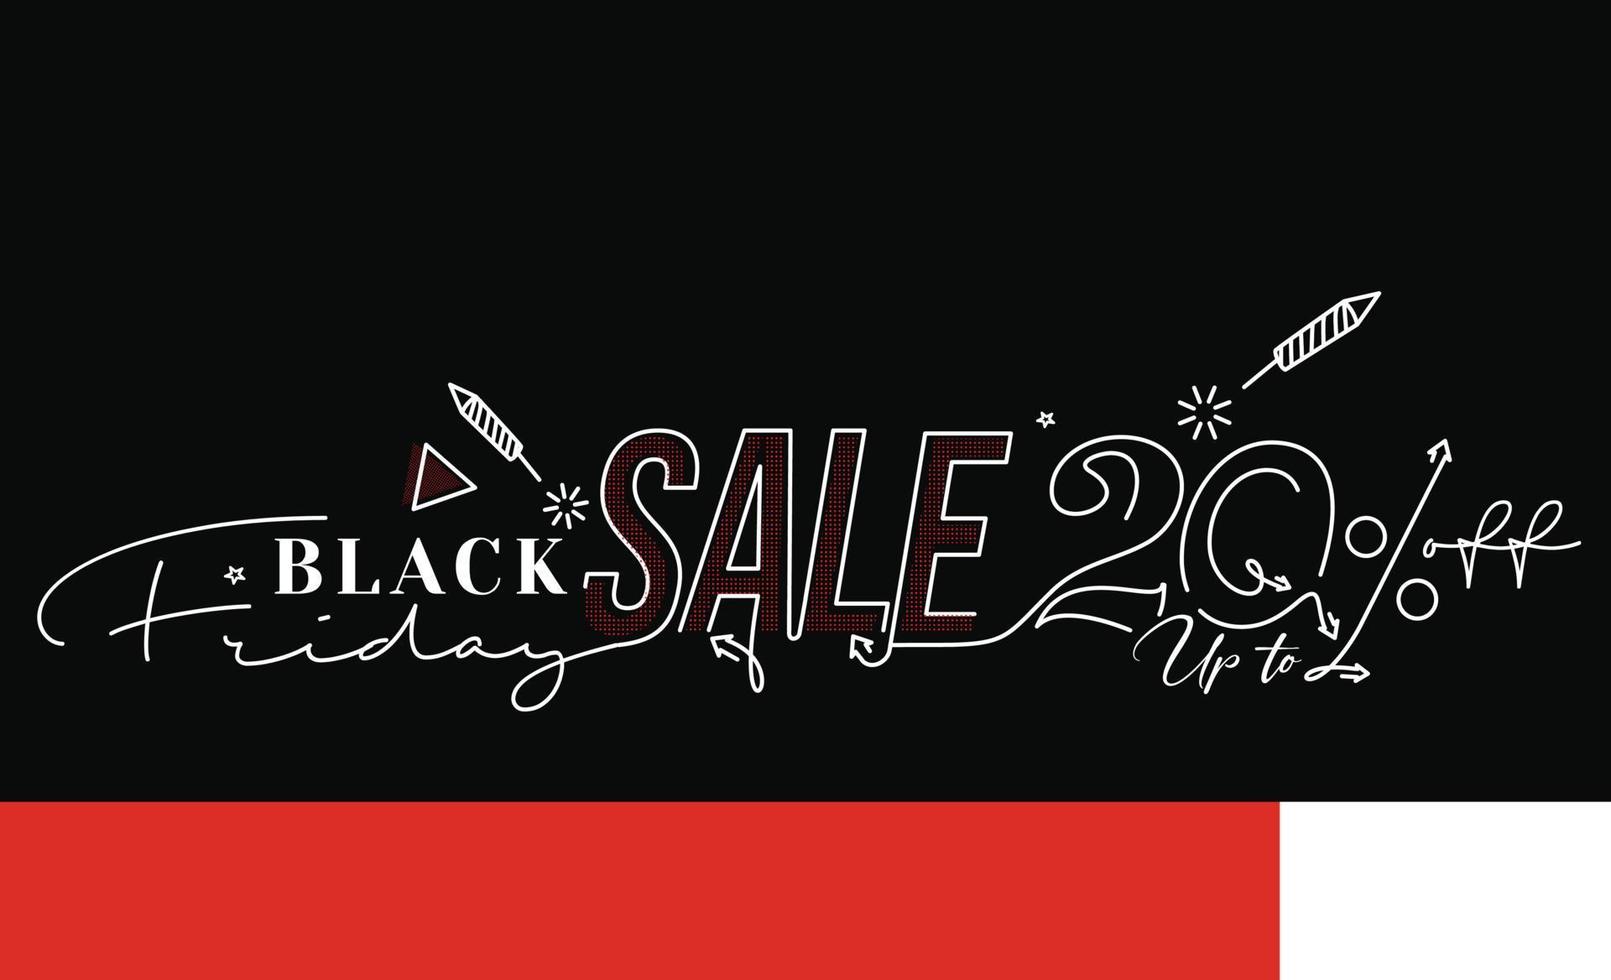 conception d'affiche ou de bannière de promotion de vente vendredi noir, offre spéciale 20 vente, modèle vectoriel de promotion et d'achat.